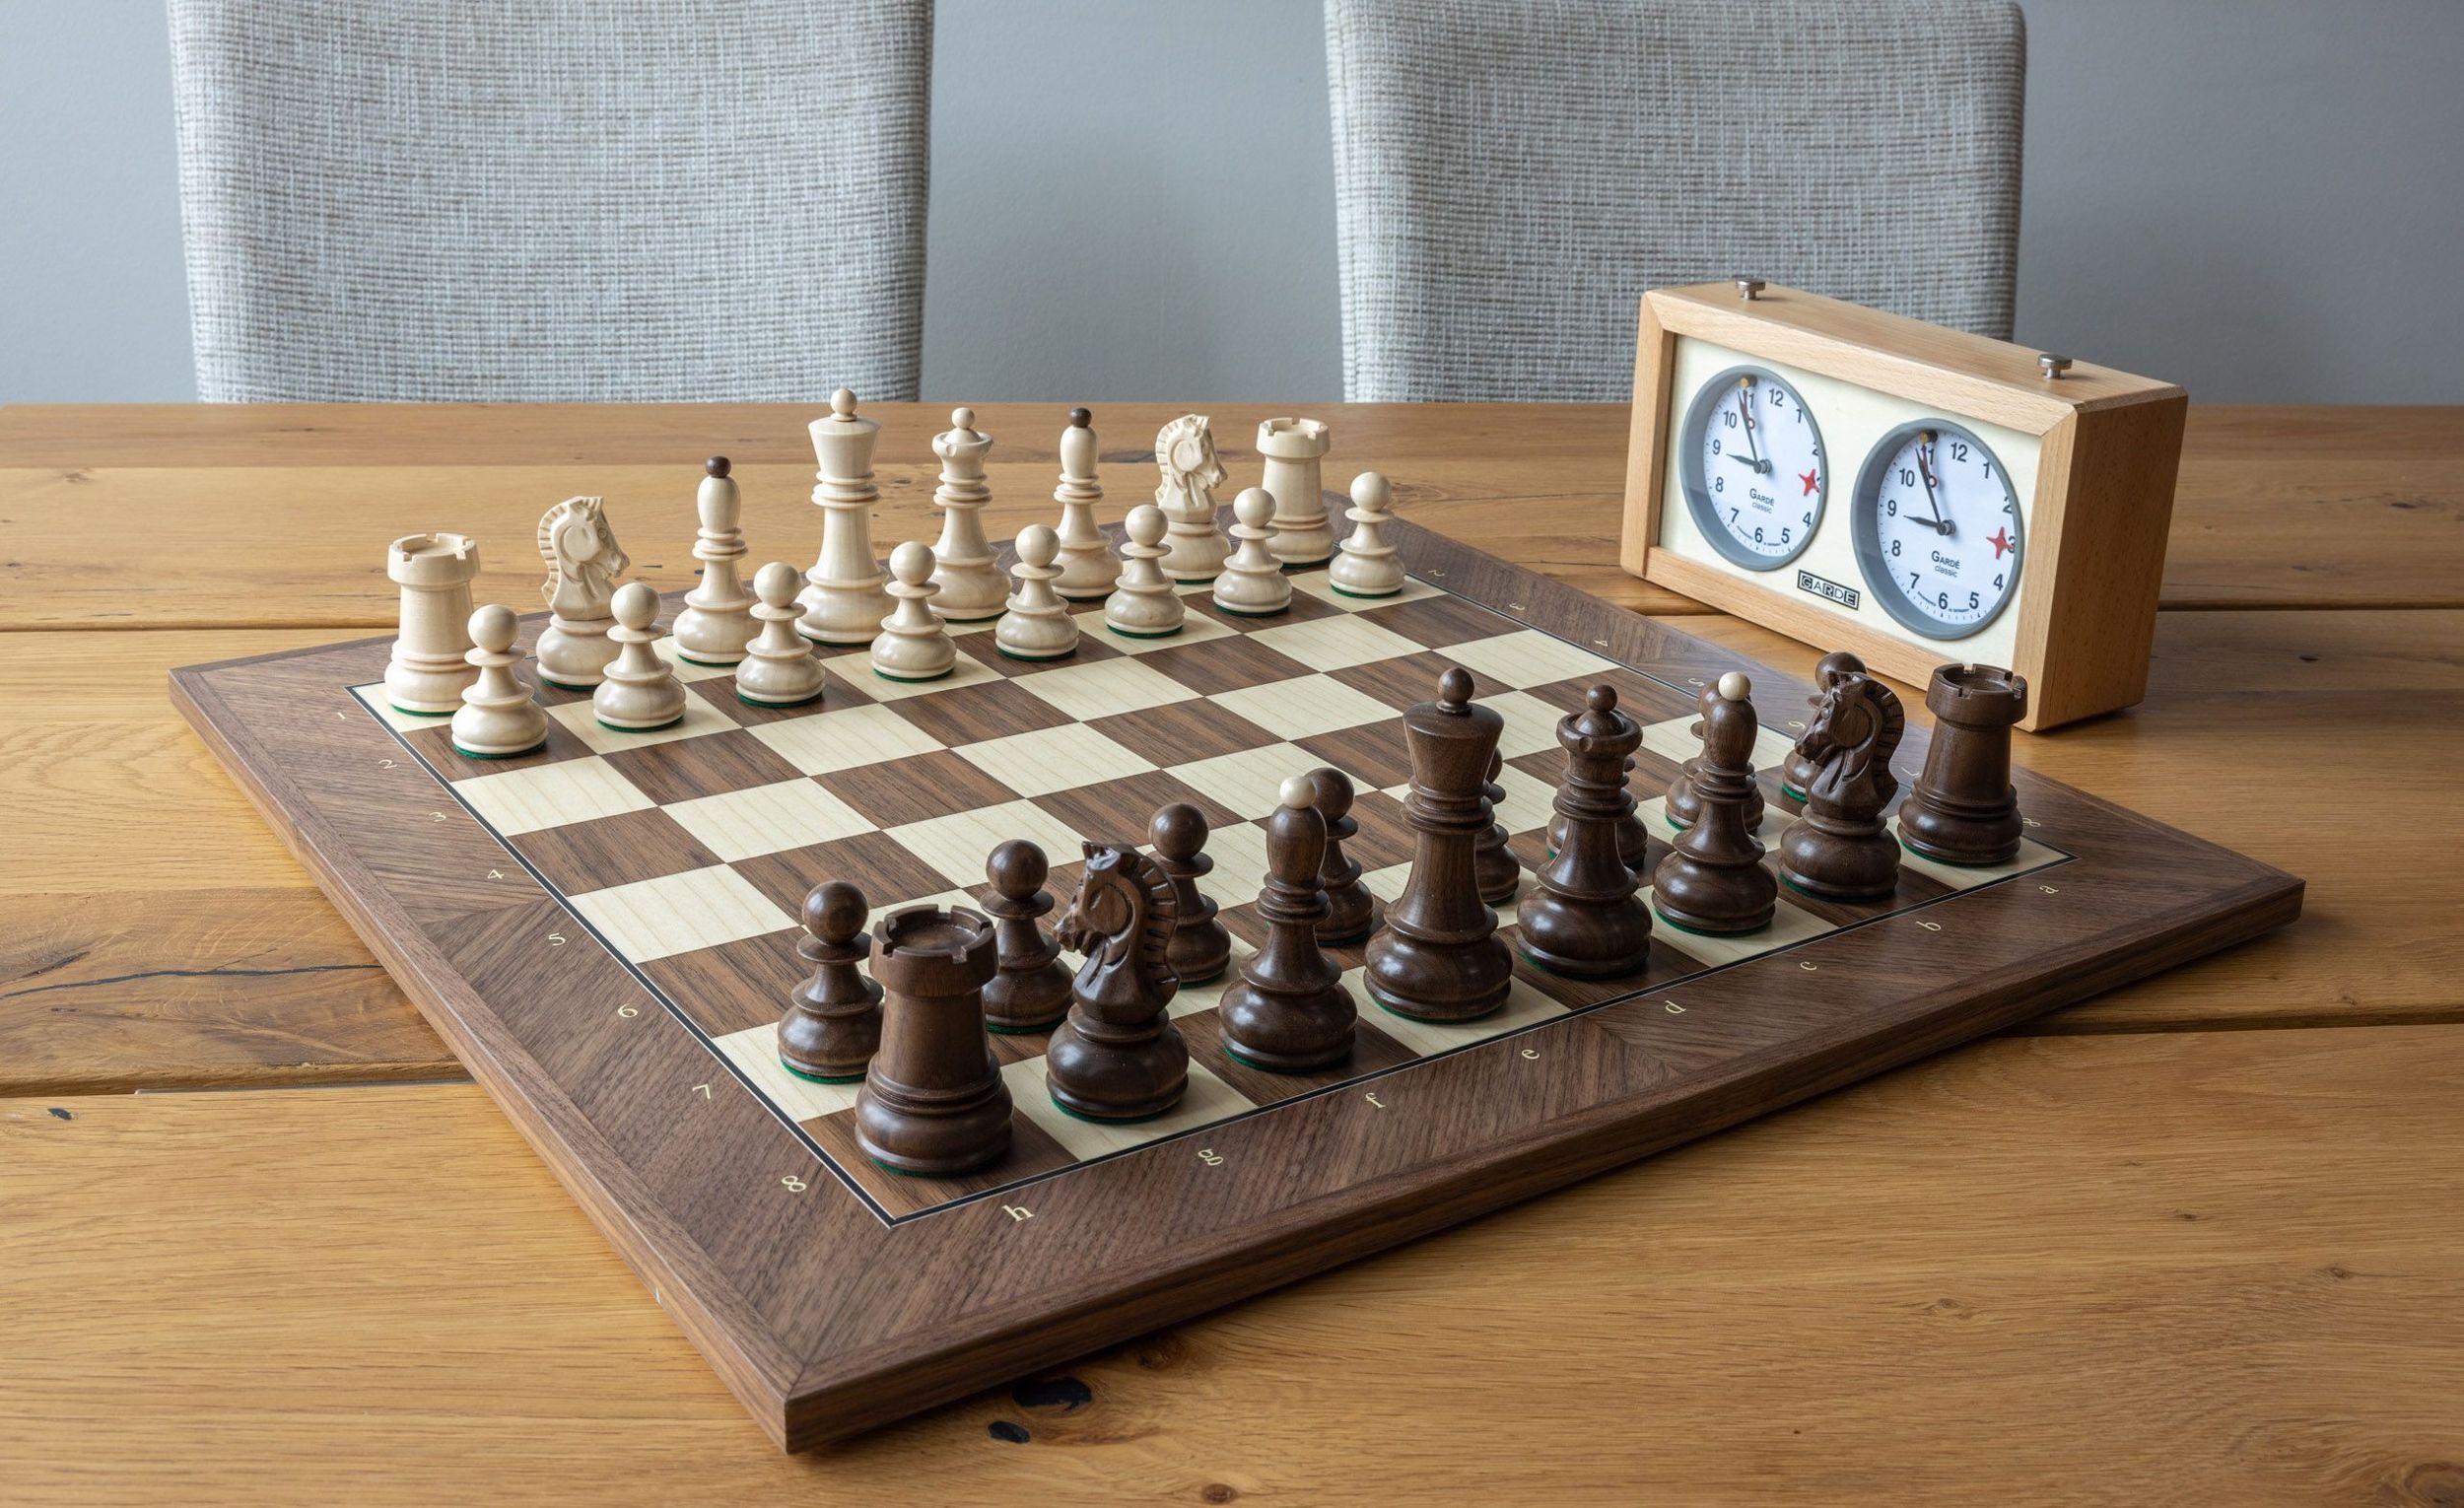 Оригинальный комплект Дубровницких шахмат. Фото: группа ВК Dubrovnik Chess Set